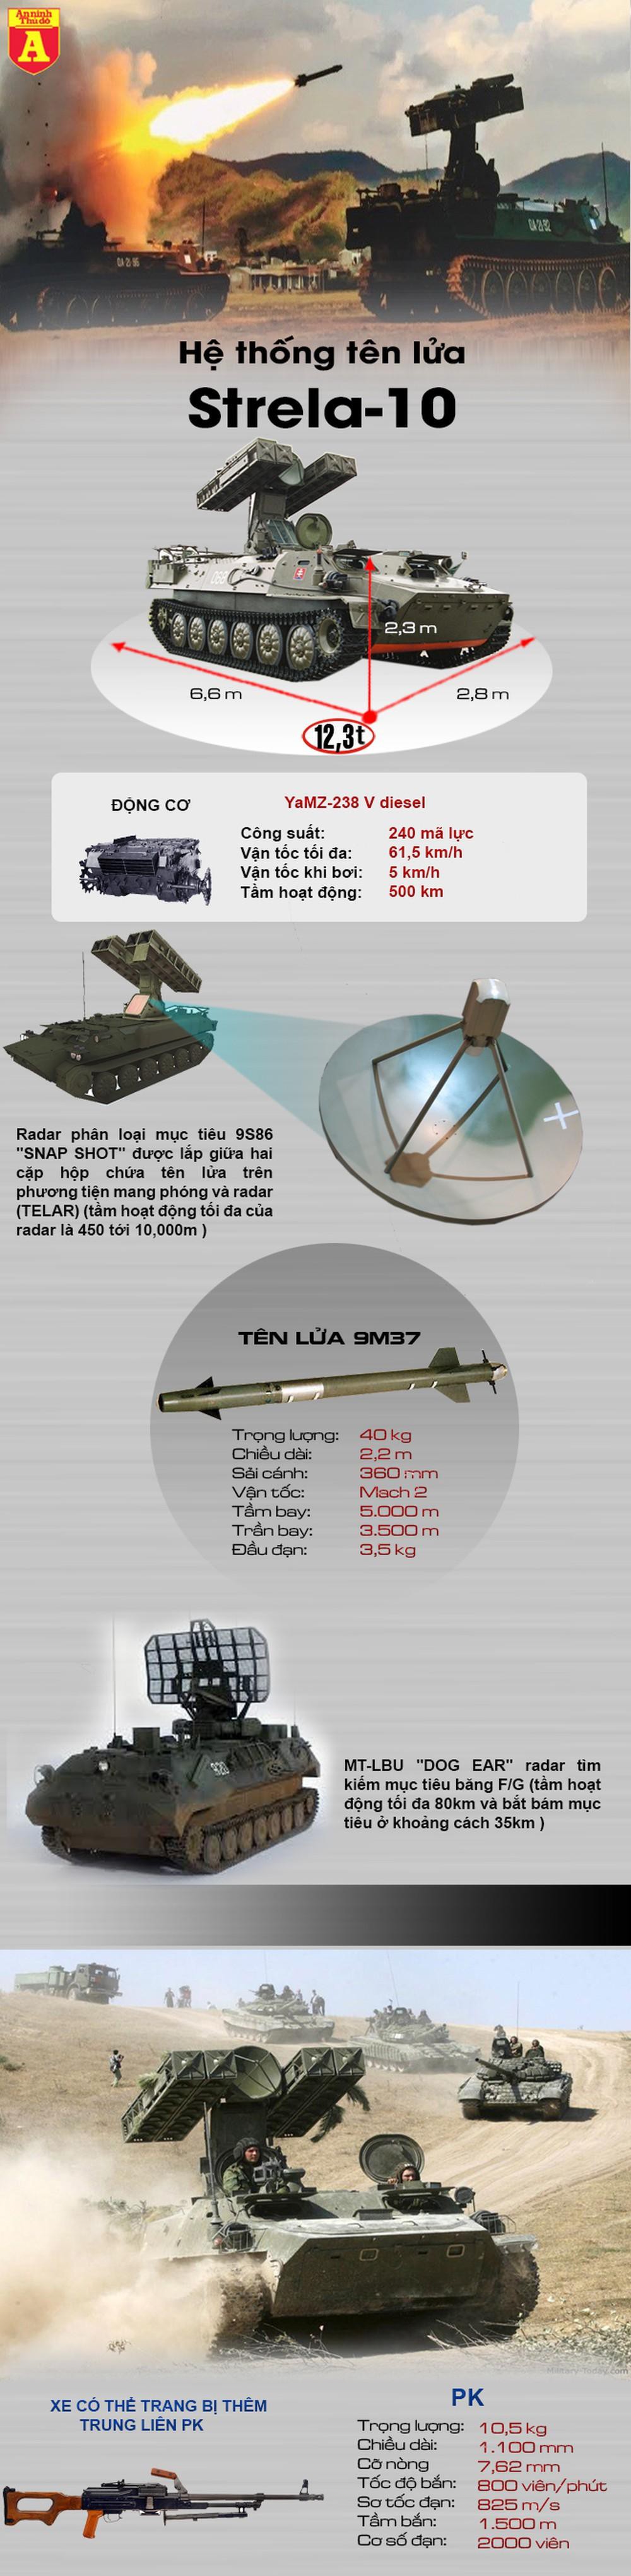 [Infographics] UCAV hiện đại Trung Quốc gục ngã hàng loạt trước vũ khí cũ kỹ thời Liên Xô  - Ảnh 1